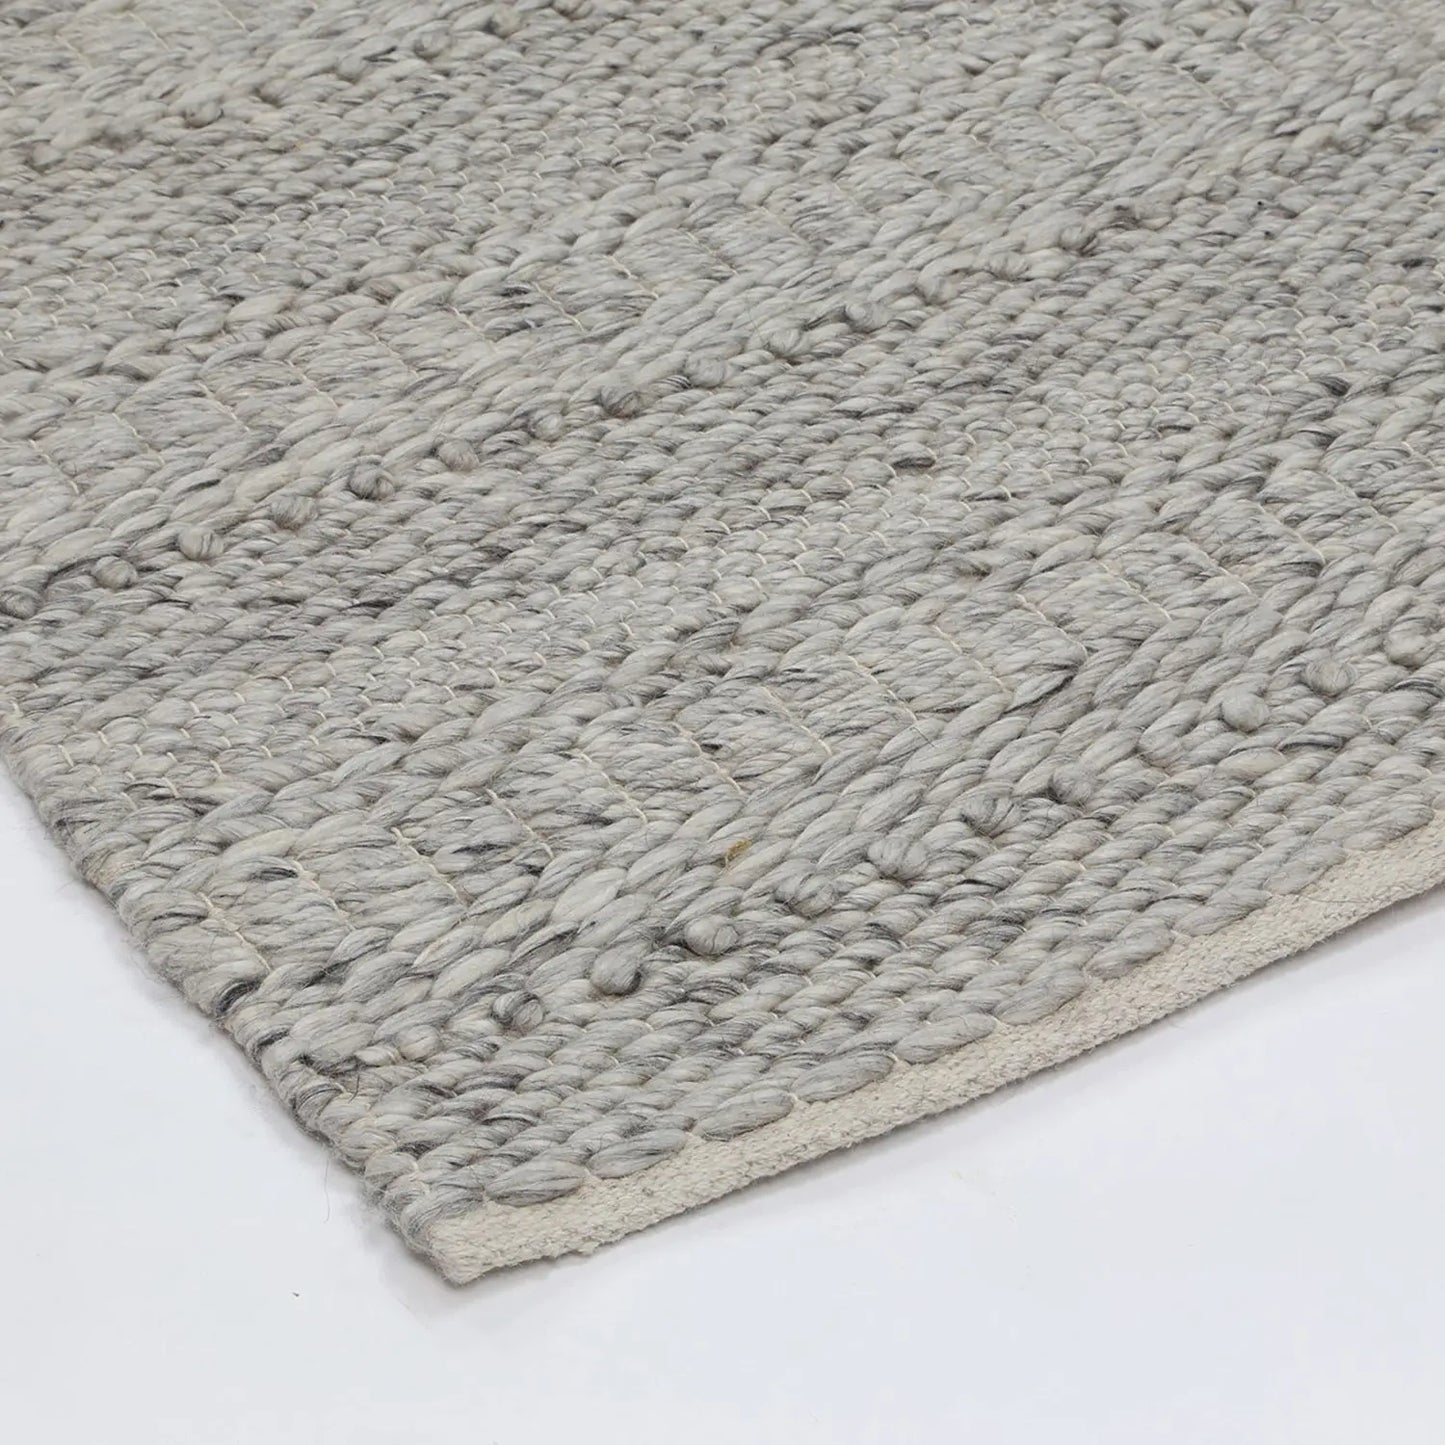 Anatori Silver Wool & Textured Rug decorugonline